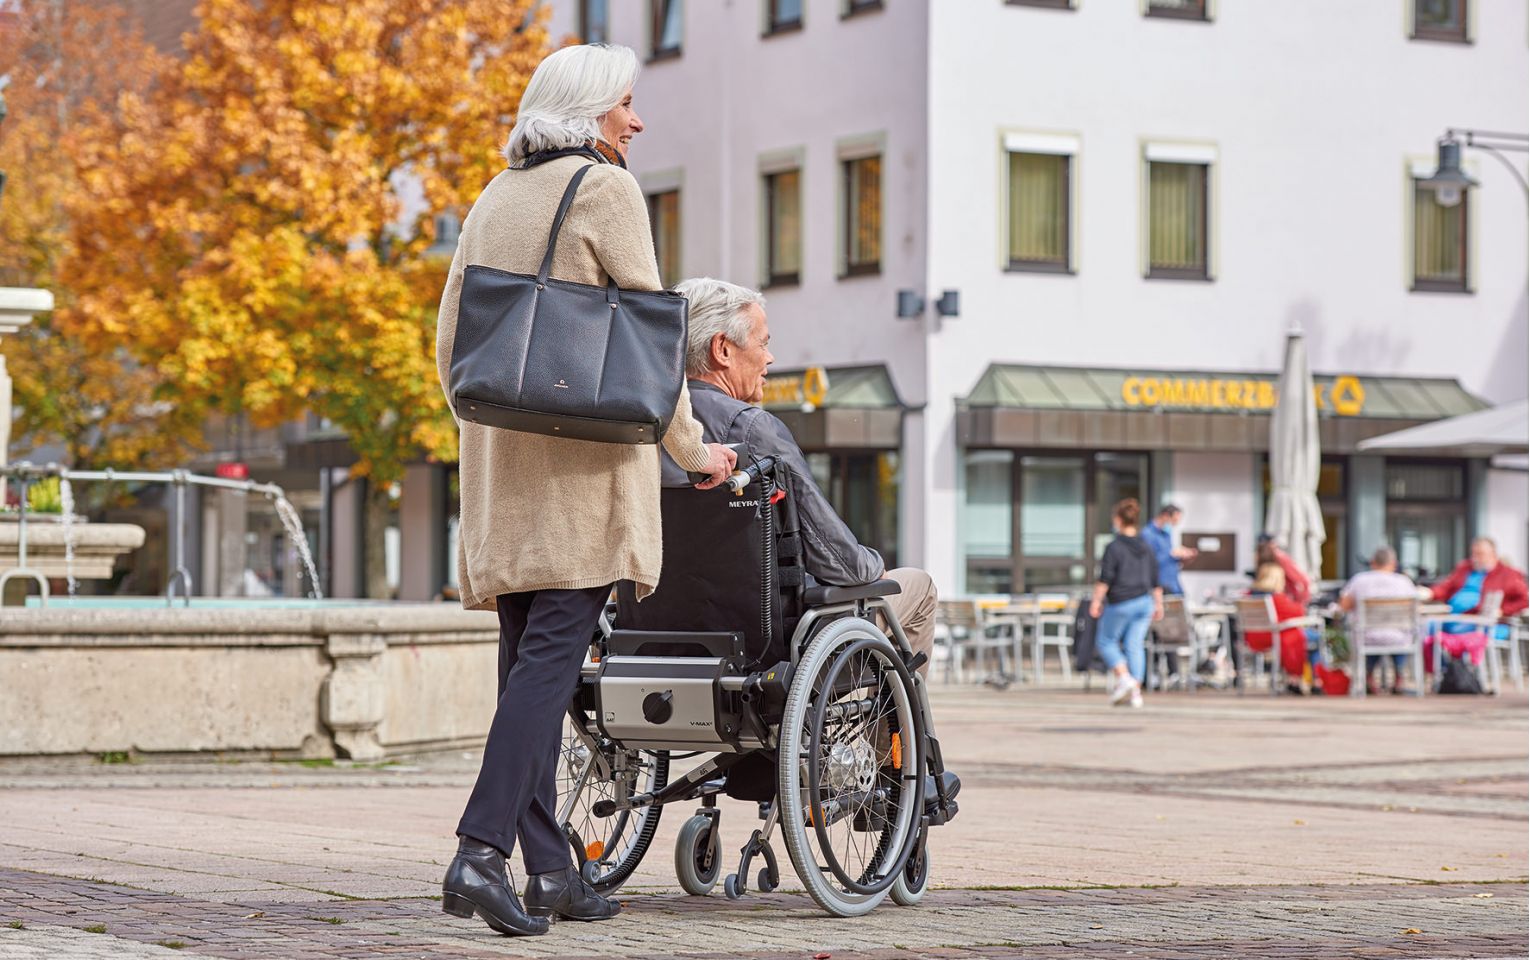 Das Bild zeigt eine ältere Frau, die einen älteren Herren in seinem Rollstuhl durch eine Innenstadt mit Pflastersteinen schiebt. Am Rollstuhl befindet sich eine Schiebe- und Bremshilfe V-MAX² der Firma AAT Alber Antriebstechnik, welche die Frau beim Schieben und Bremsen des Rollstuhls unterstützt und so mehr Sicherheit bietet.